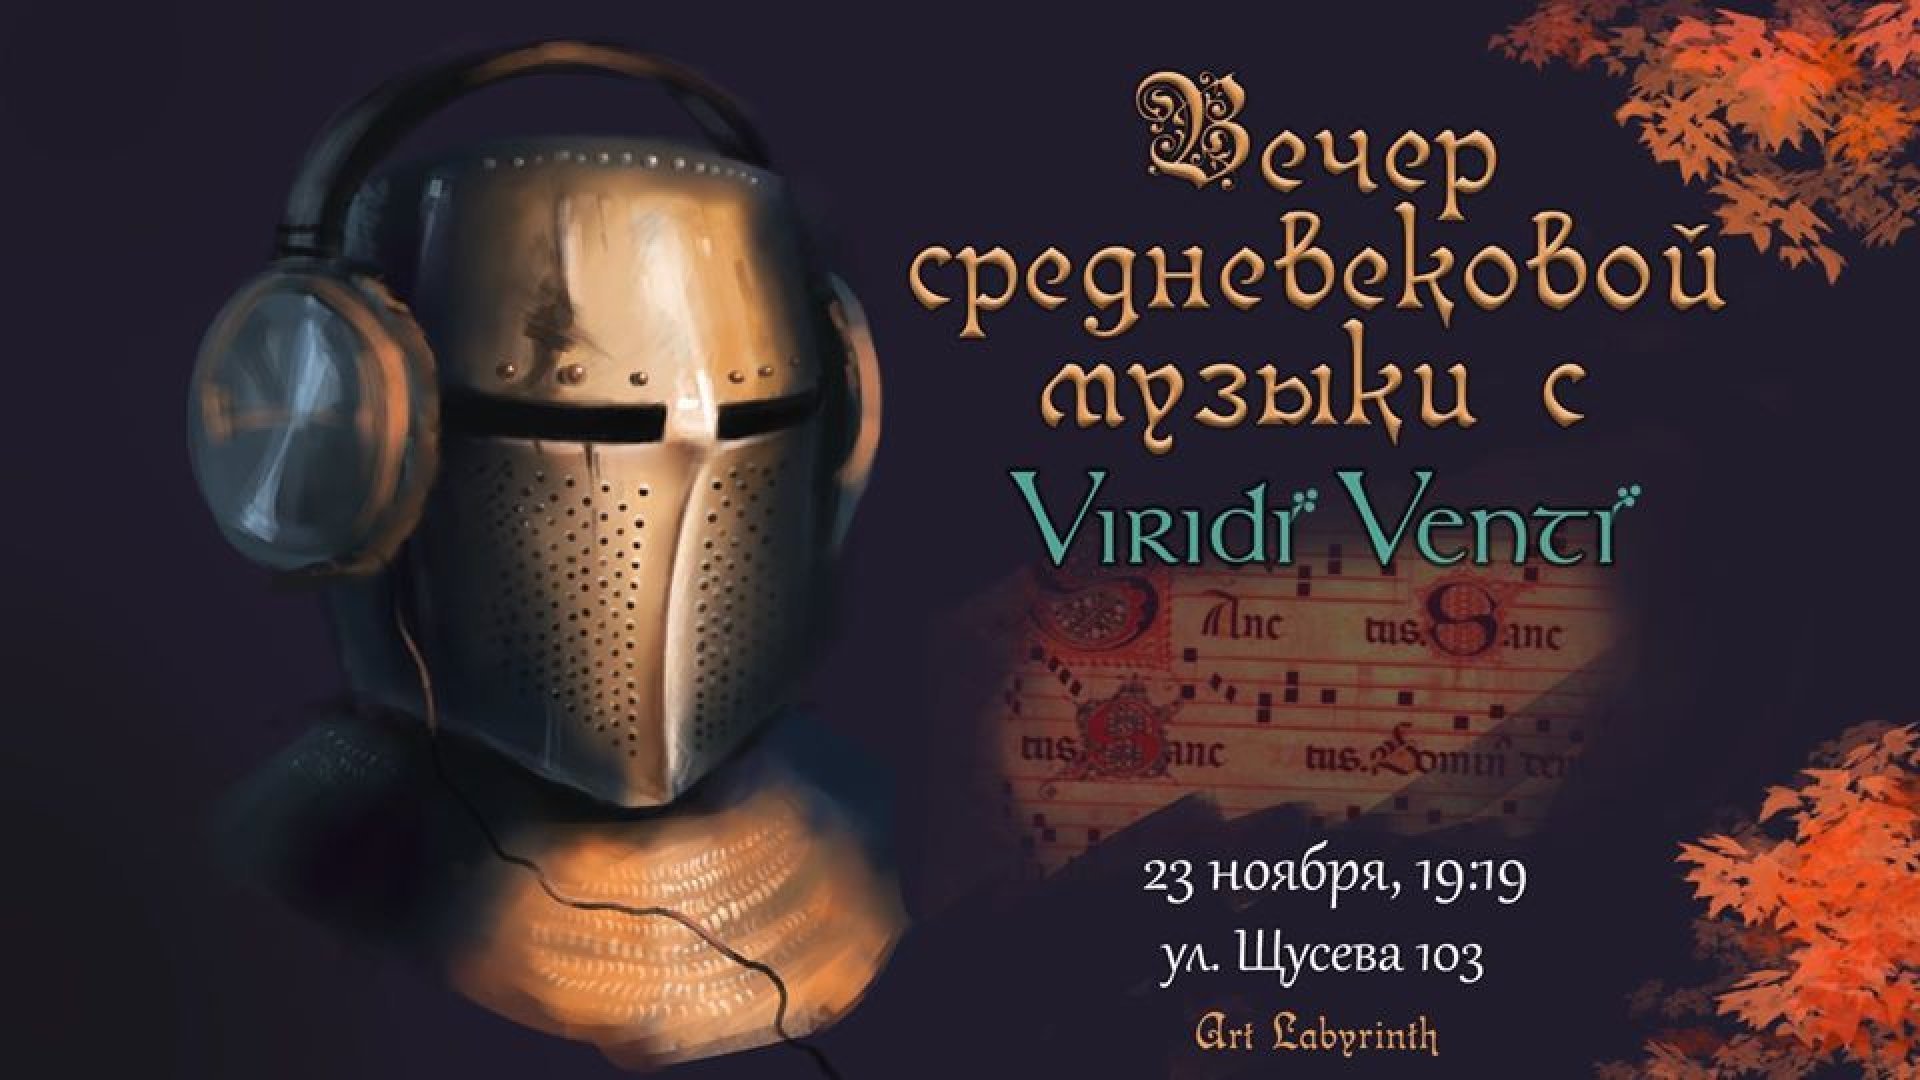 Вечер средневековой музыки Viridi Venti